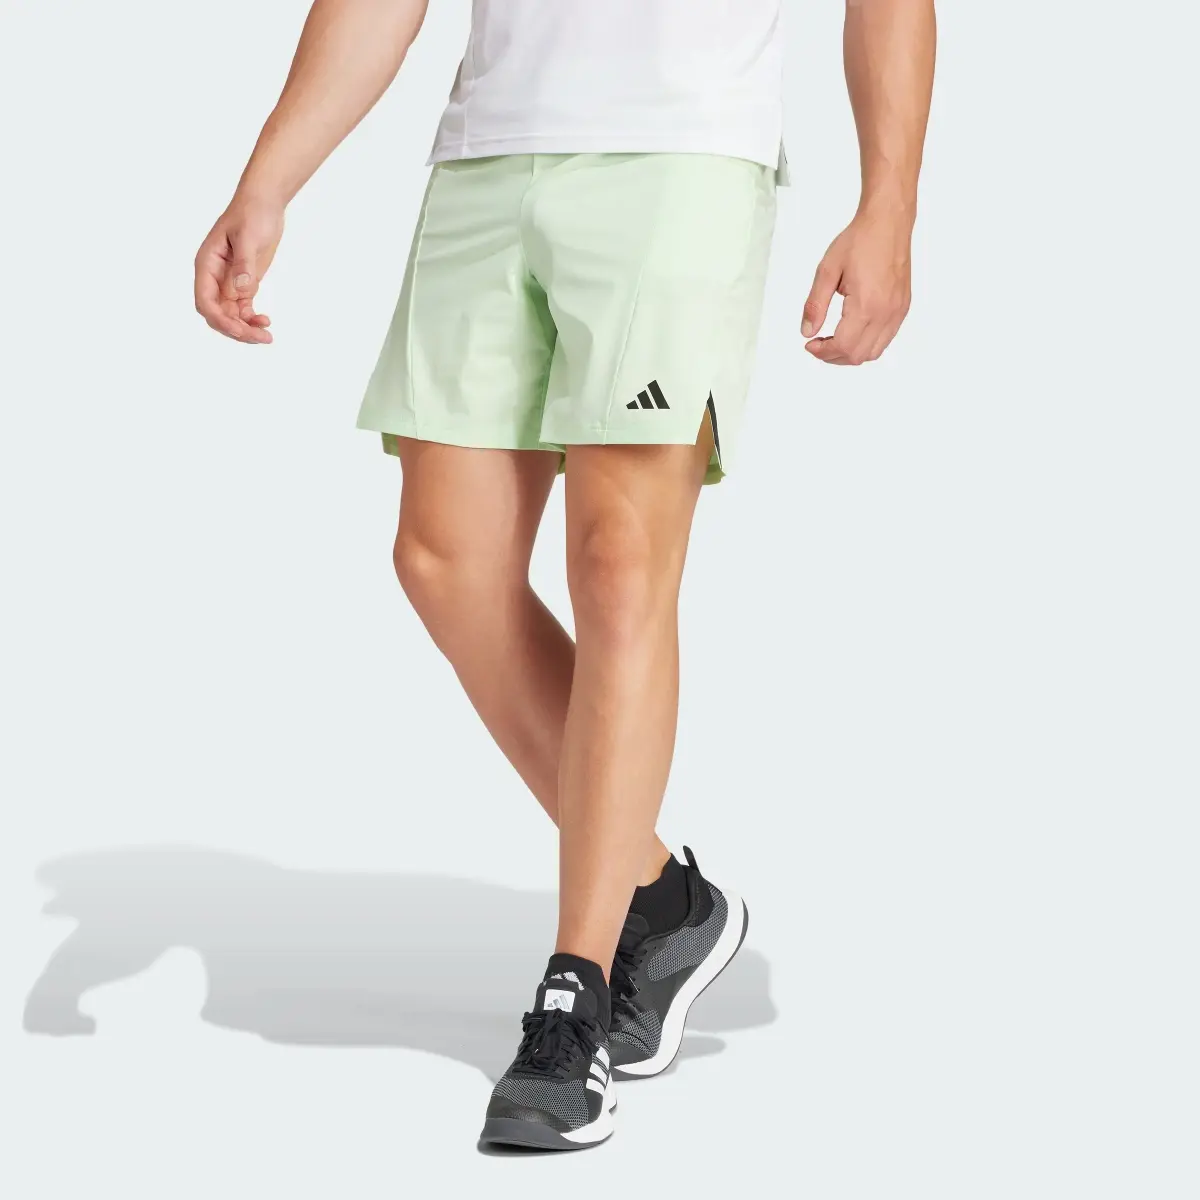 Adidas Designed for Training Workout Shorts. 1